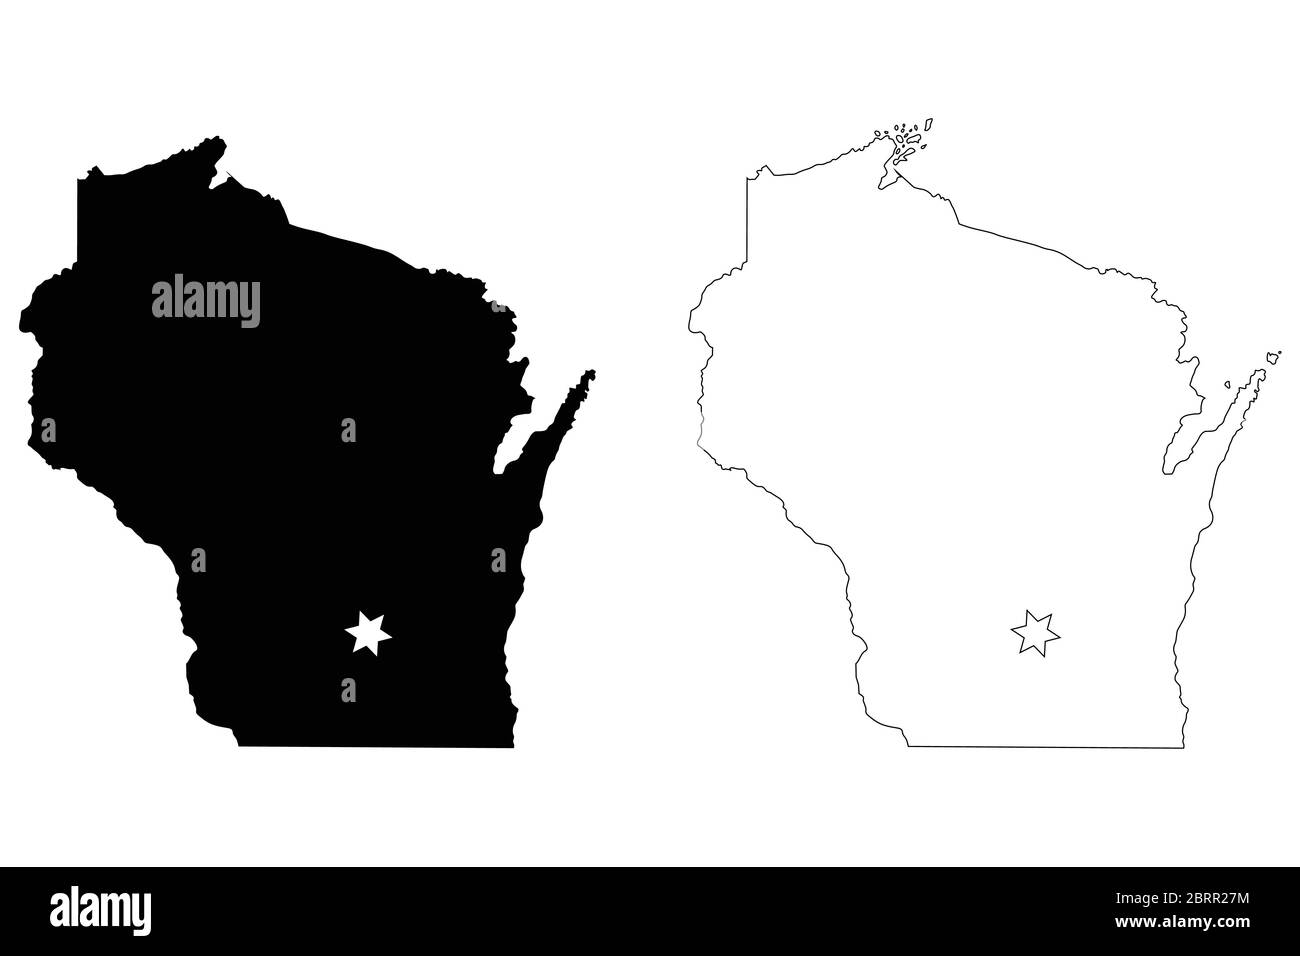 Wisconsin WI State Map USA mit Capital City Star in Madison. Schwarze Silhouette und umreißen isolierte Karten auf weißem Hintergrund. EPS-Vektor Stock Vektor